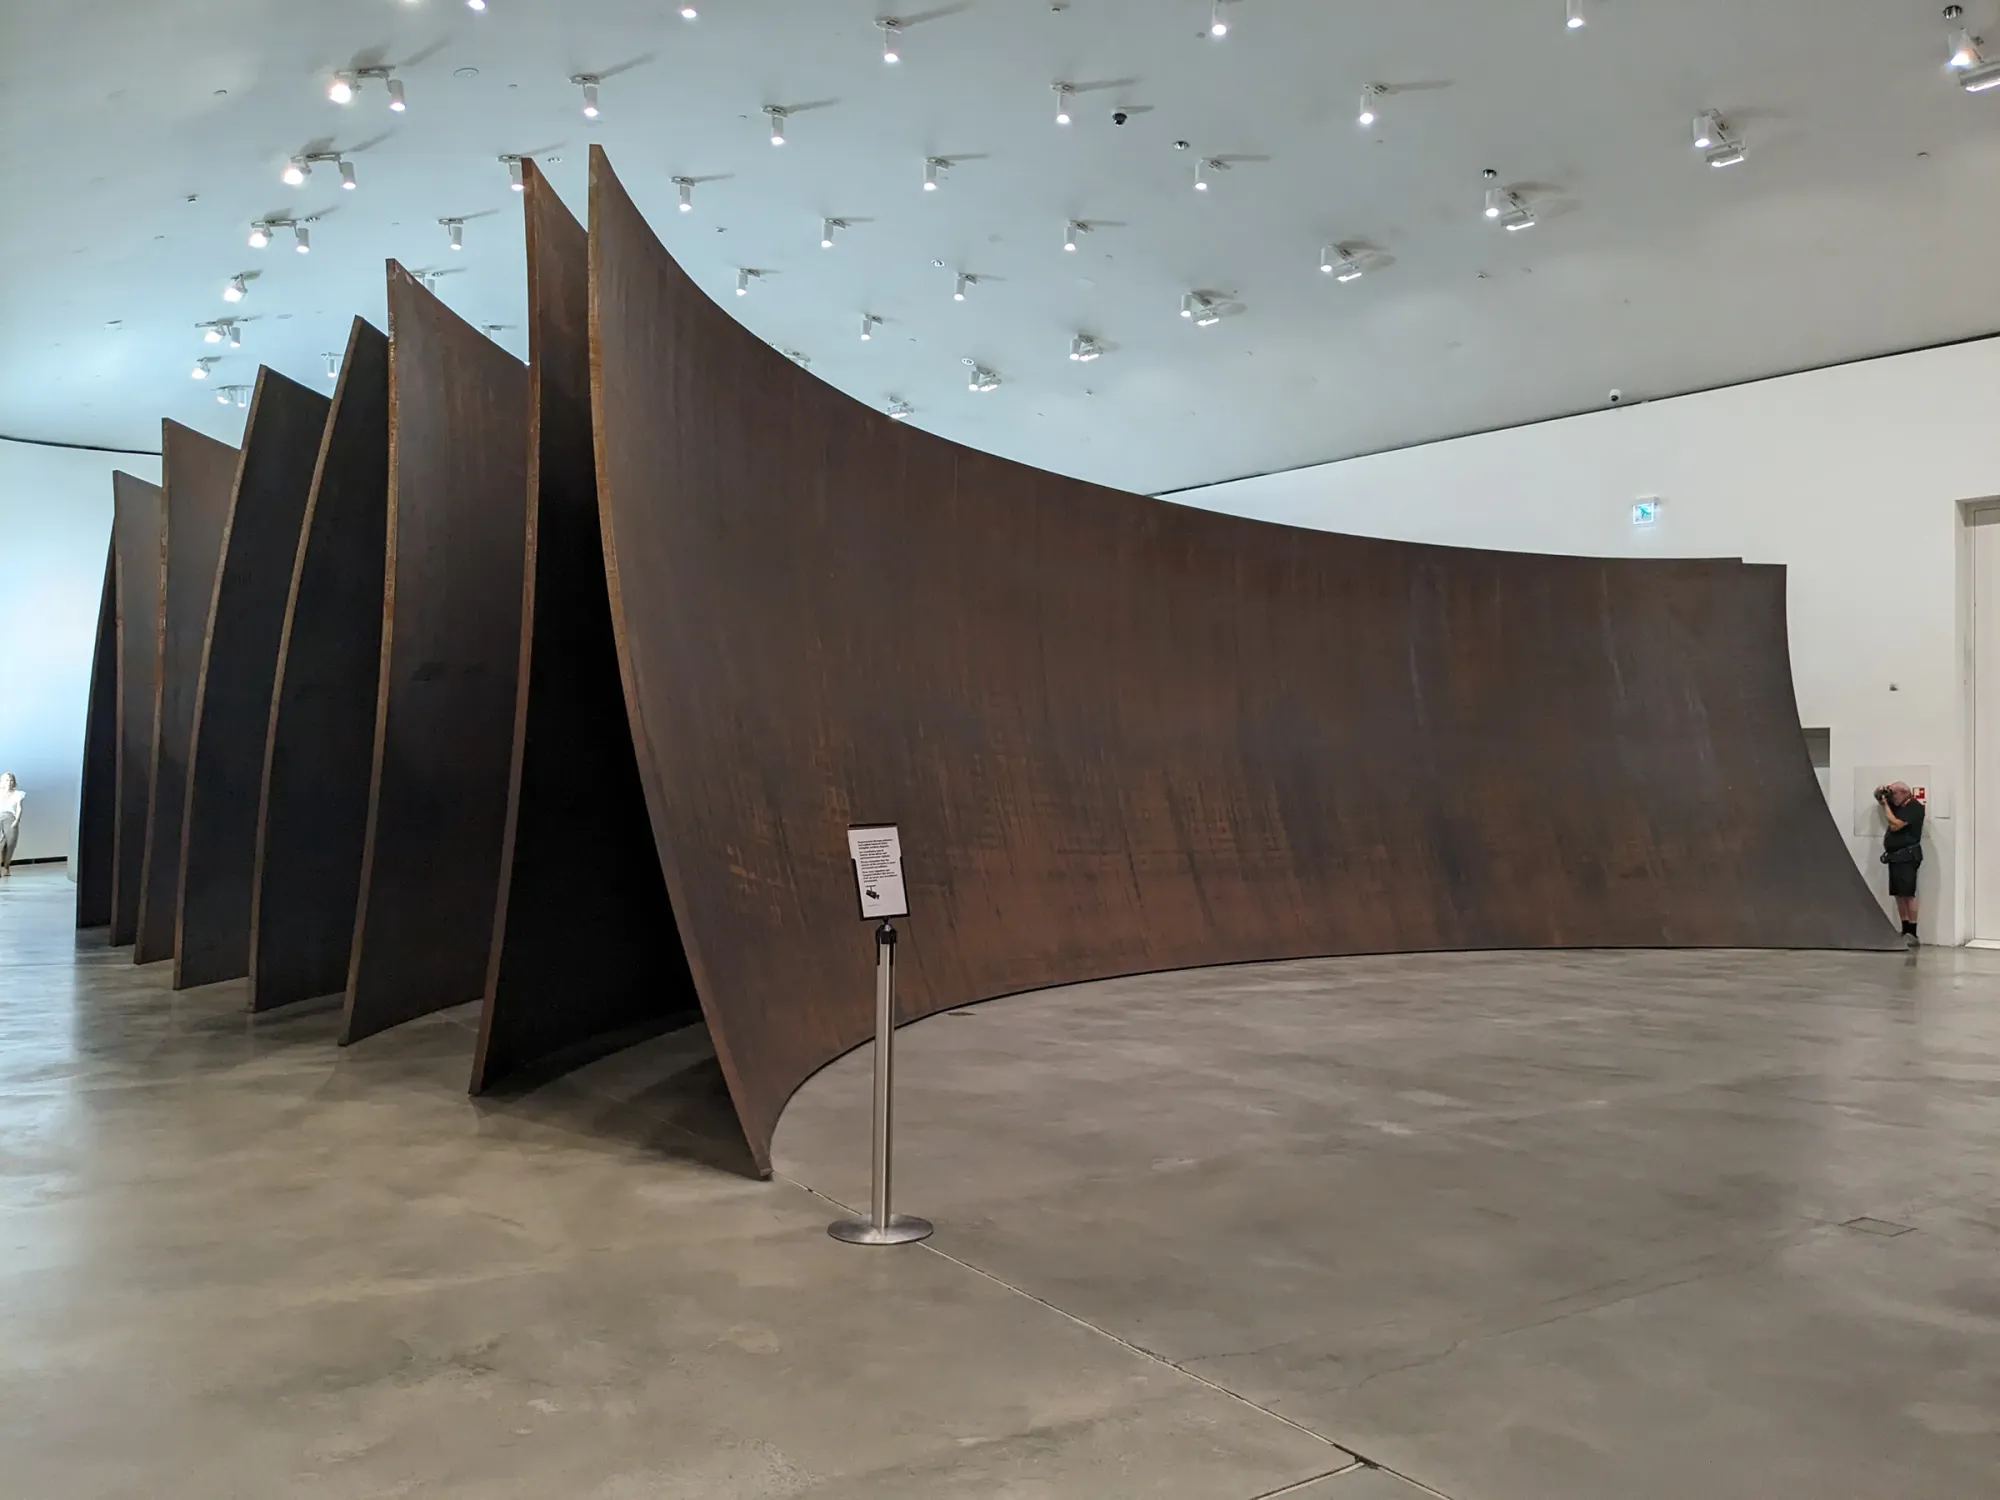 richard-serra-maze-guggenheim-bilbao-installation-steel-curves-famous-contemporary-artist